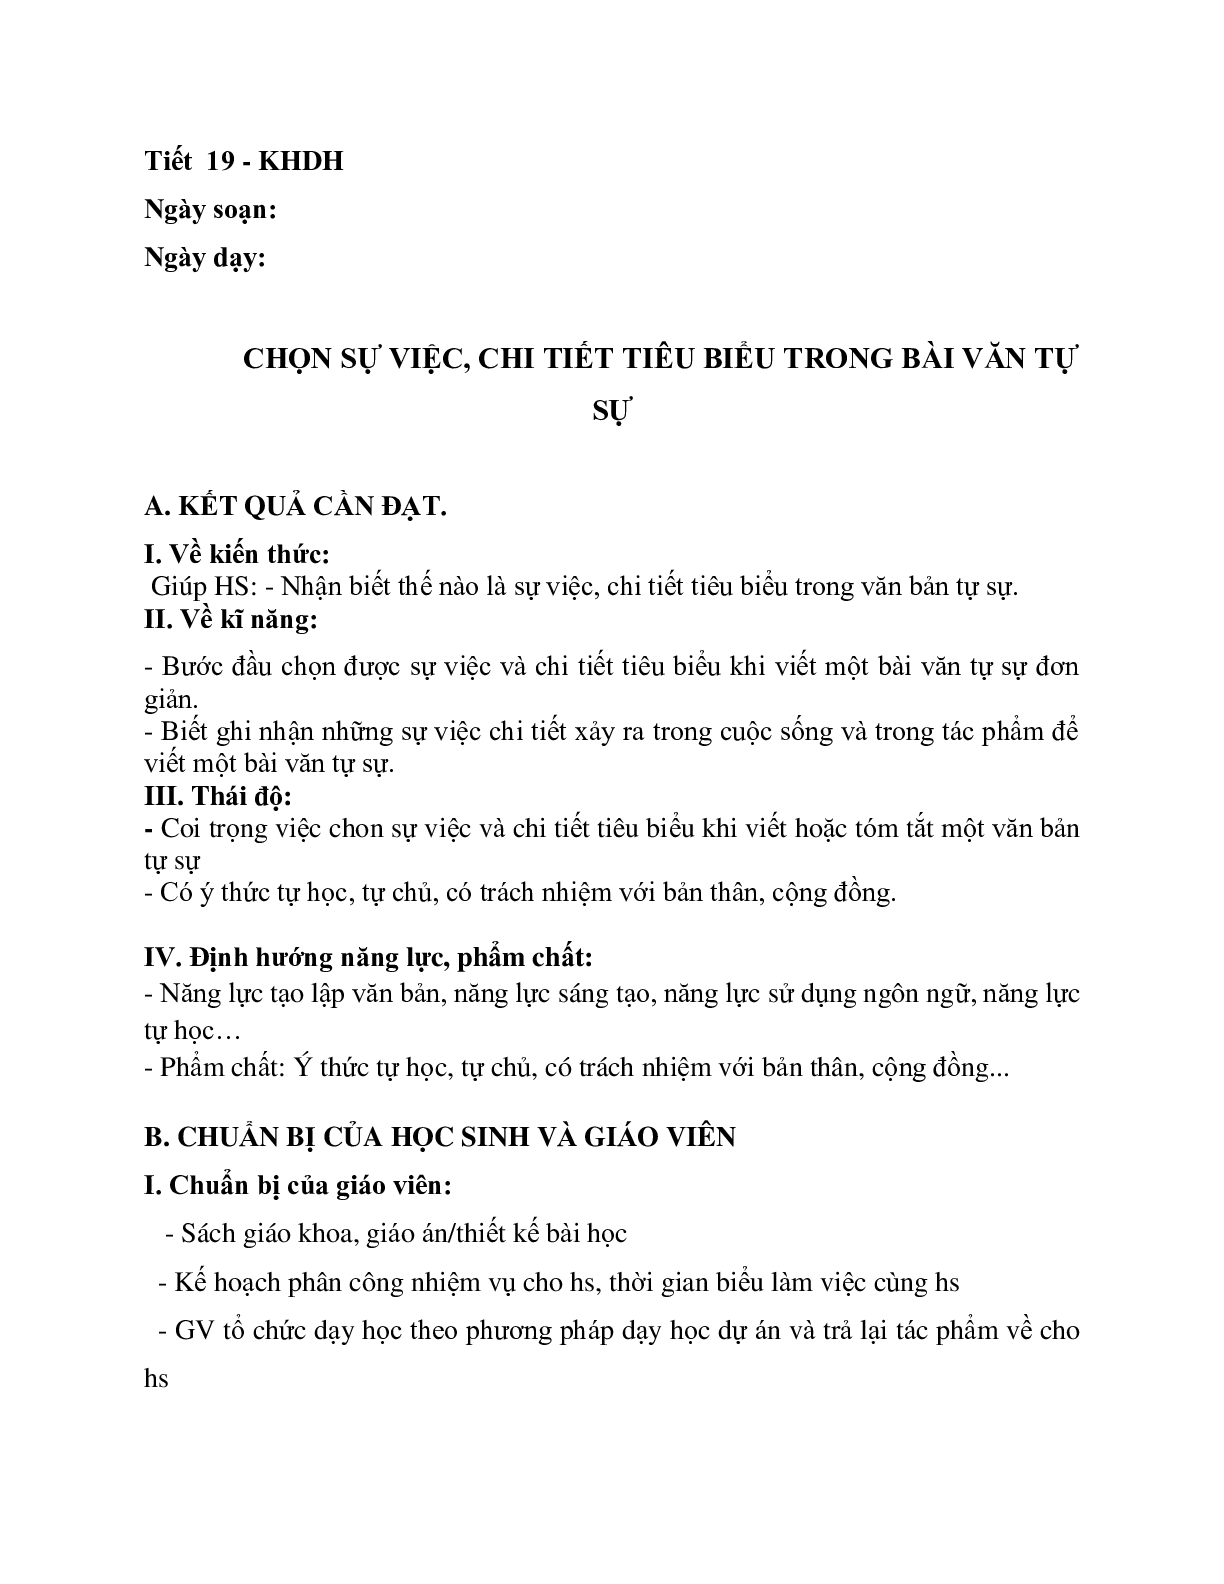 Giáo án ngữ văn lớp 10 Tiết 19: Chọn sự việc chi tiết tiêu biểu trong văn tự sự (trang 1)